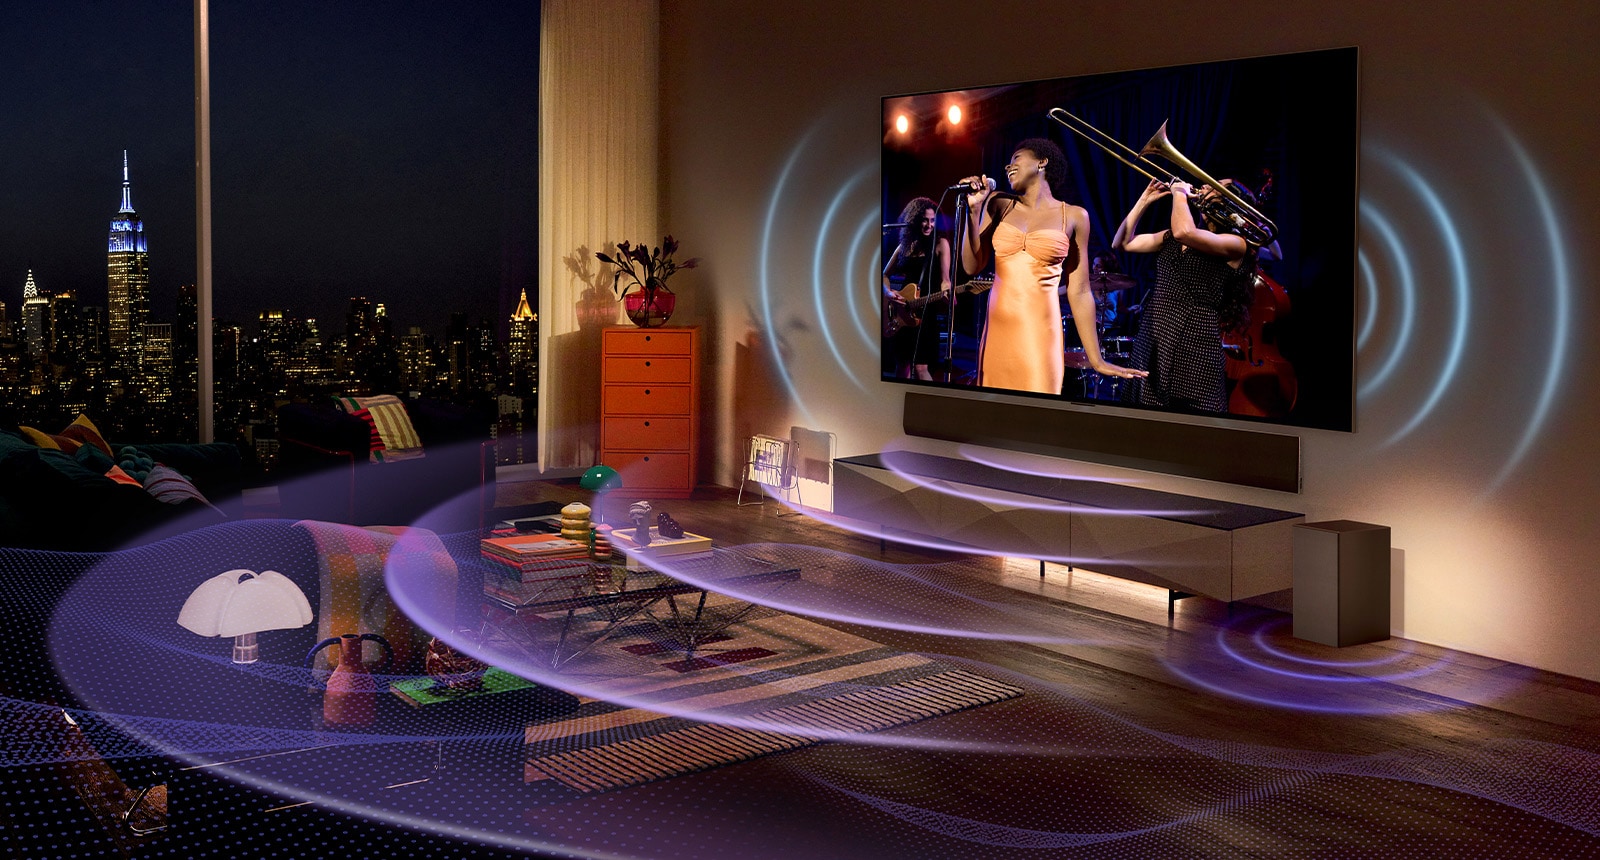 תמונה של טלוויזיית LG OLED בחדר, ובה מוצגת הופעה חיה. הקווים הכחולים המקומרים מציגים את צליל הטלוויזיה והקווים הסגולים המקומרים מציגים את צליל הסאונד-בר הממלאים את החלל.